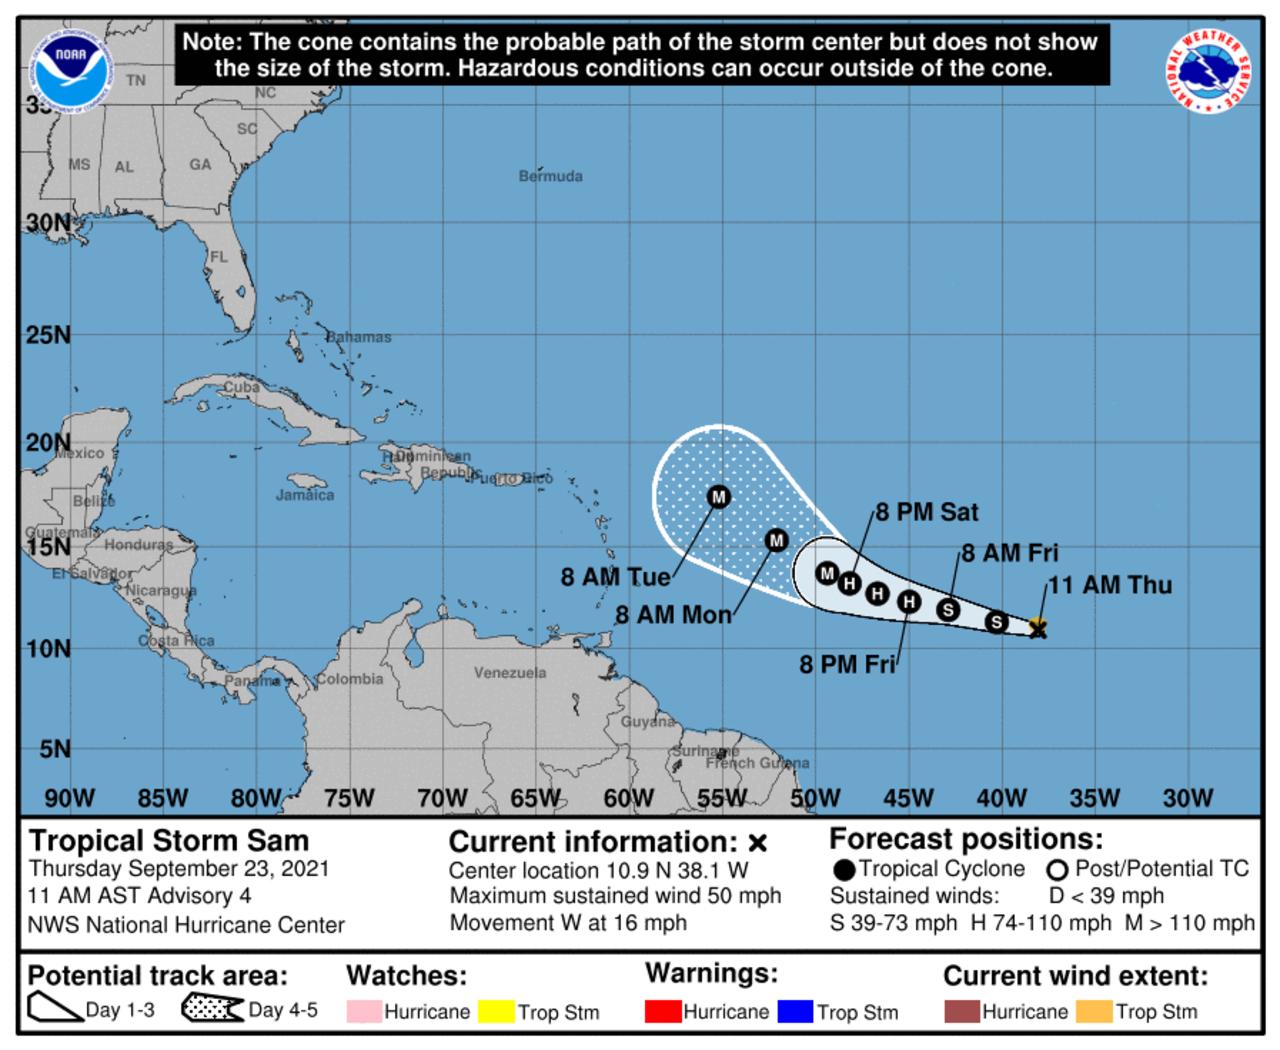 La tormenta tropical 'Sam' se formó en el Atlántico y se espera se convierta en un huracán poderoso. (TWITTER)
